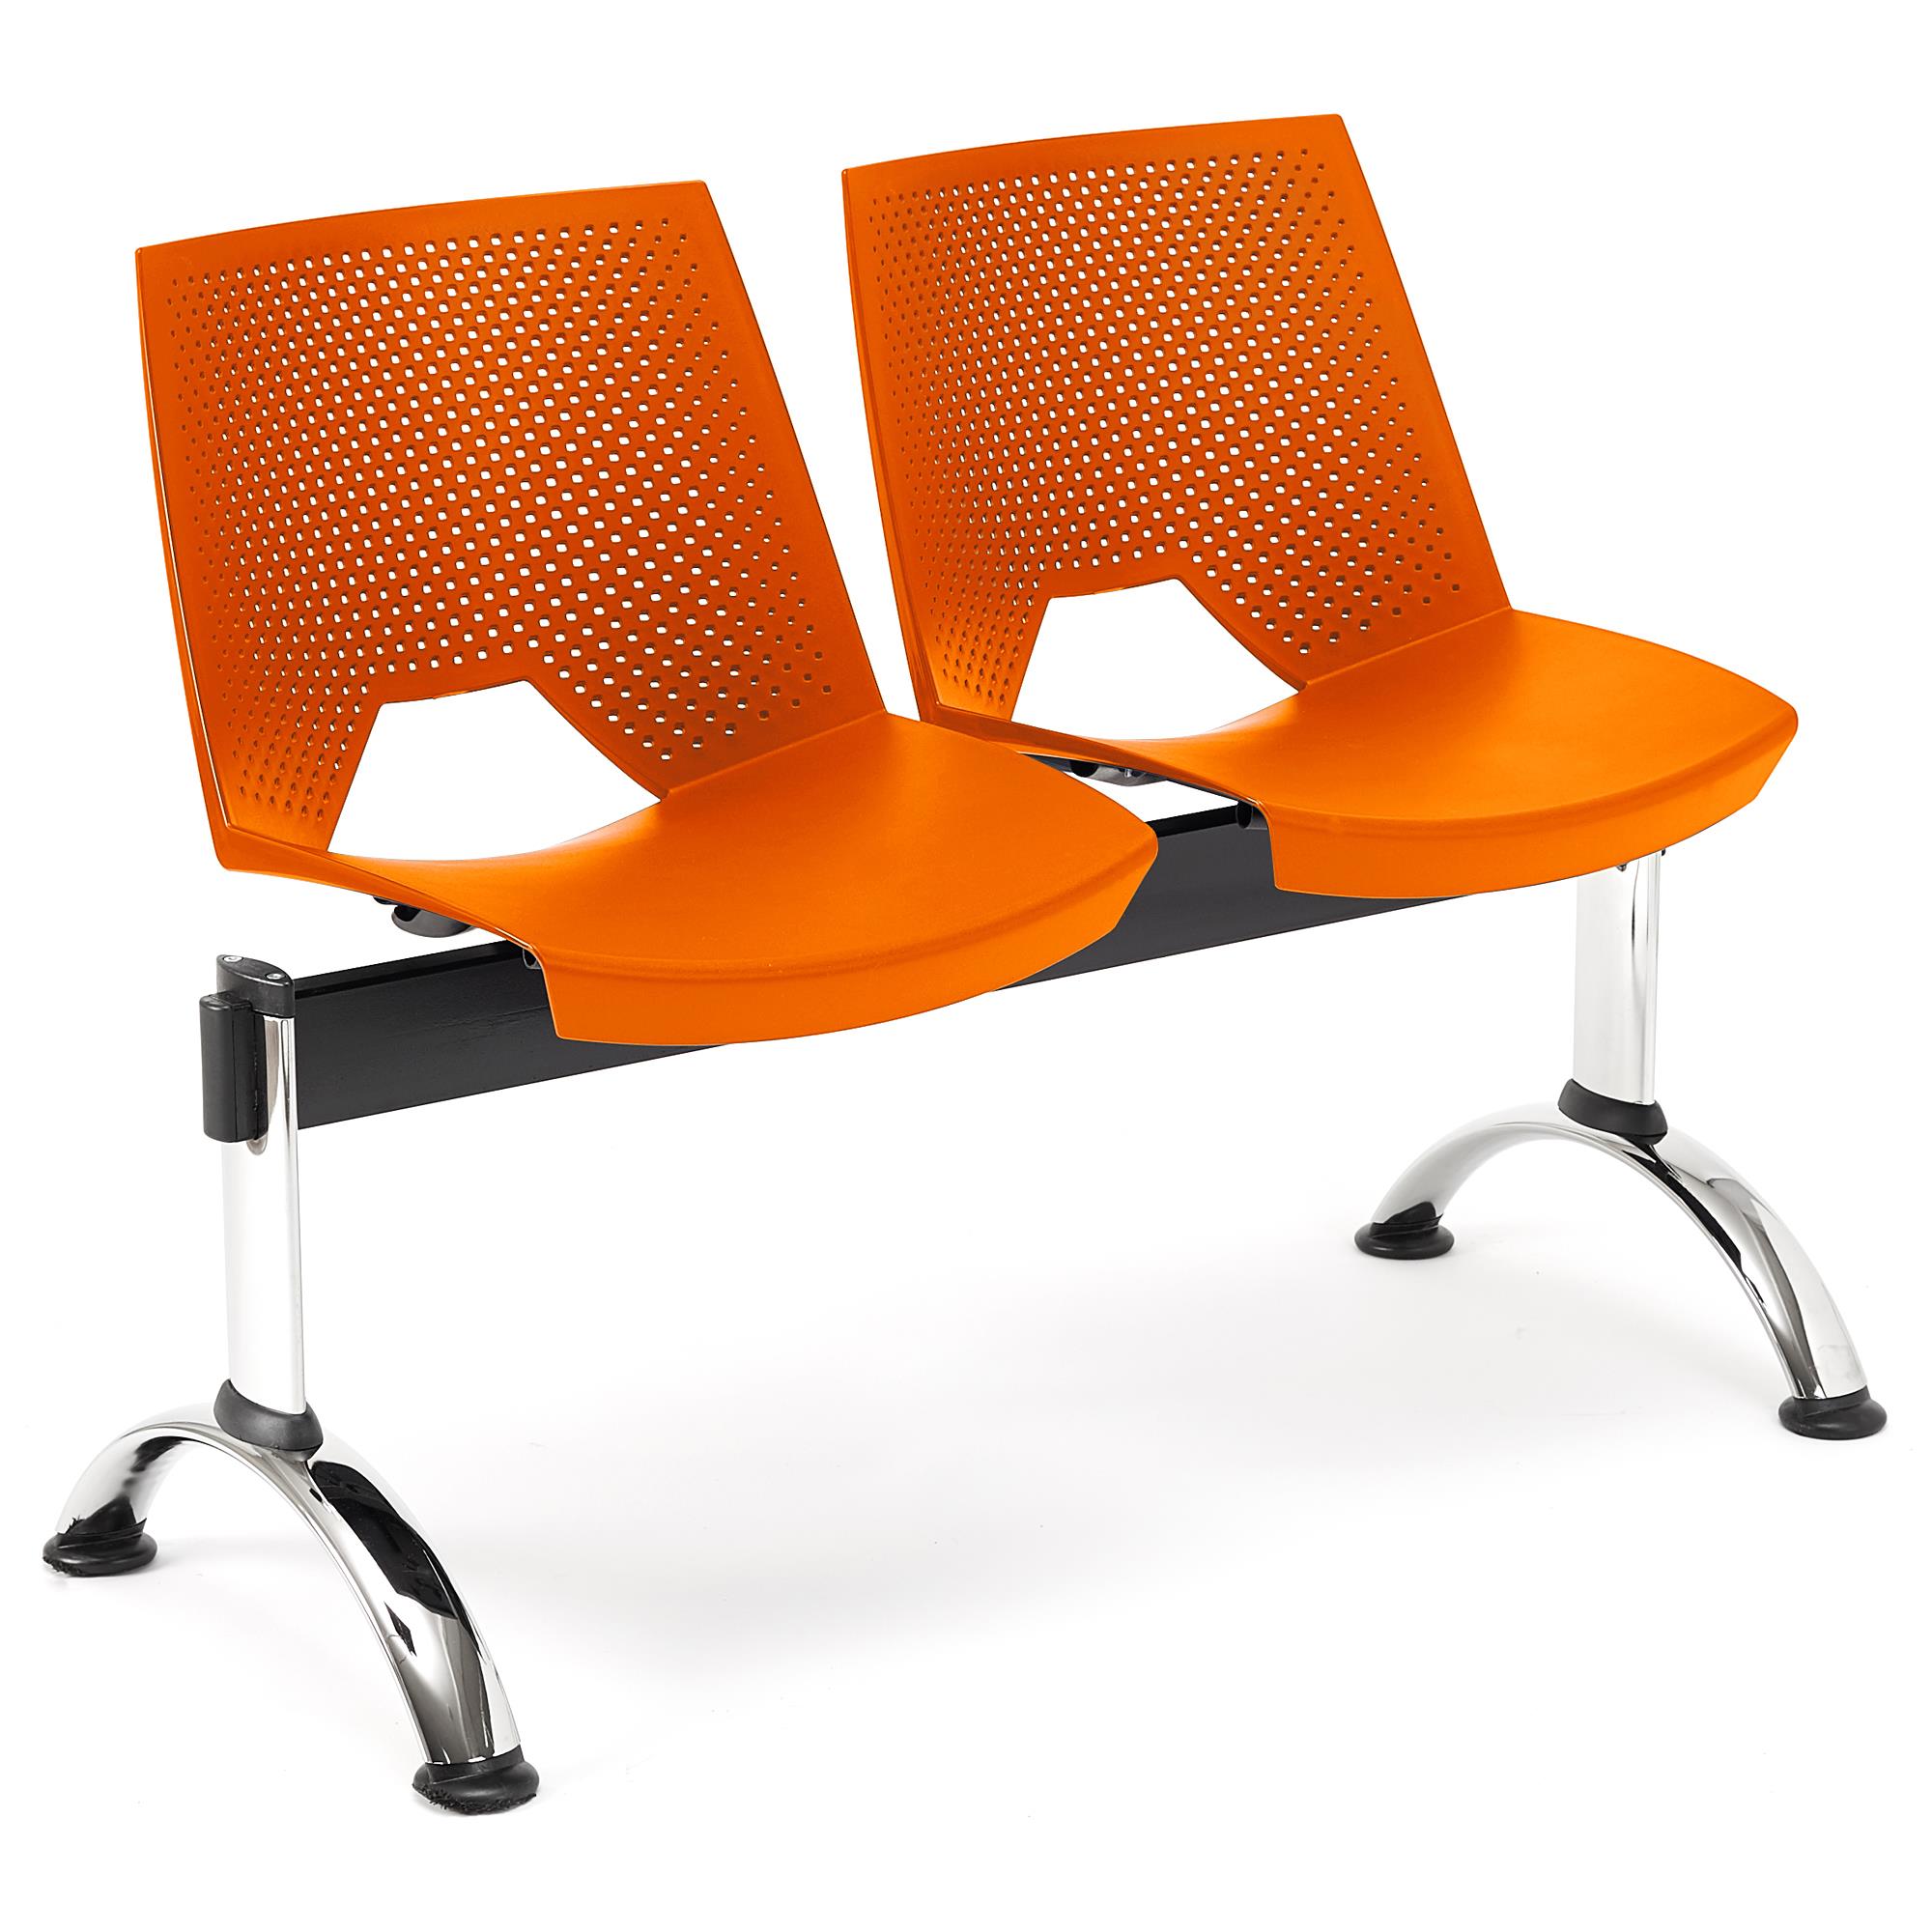 Banc salle d'attente 2 sièges ENZO, Structure en Métal, Plastique Orange